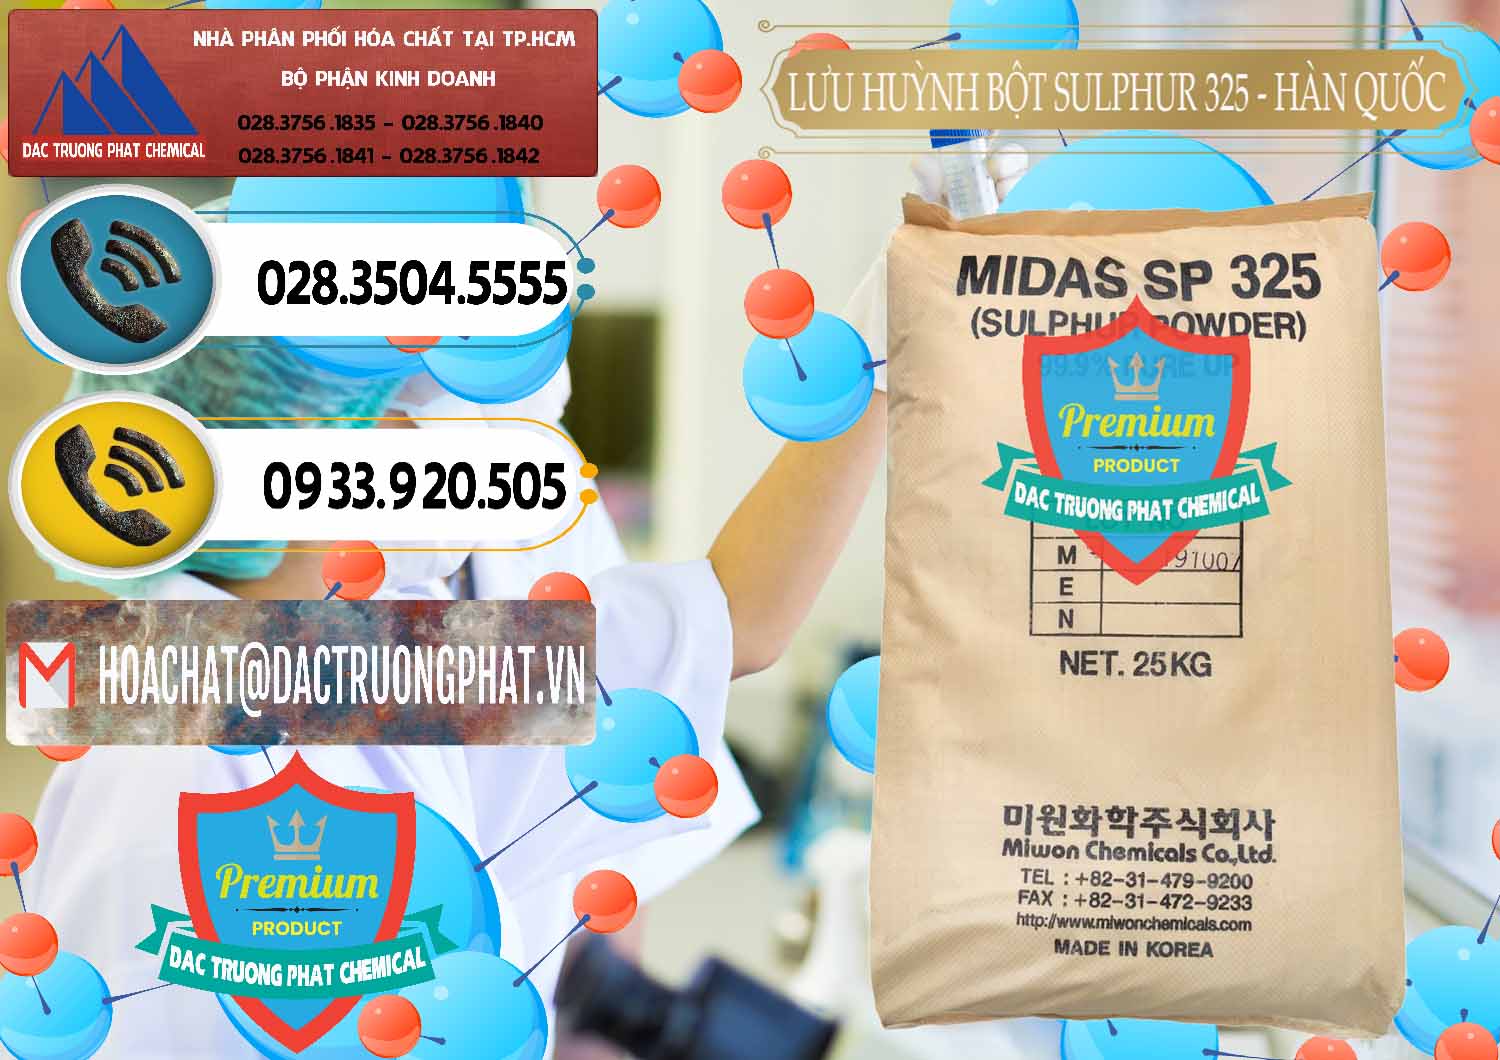 Đơn vị bán và phân phối Lưu huỳnh Bột - Sulfur Powder Midas SP 325 Hàn Quốc Korea - 0198 - Cty phân phối ( cung cấp ) hóa chất tại TP.HCM - hoachatdetnhuom.vn